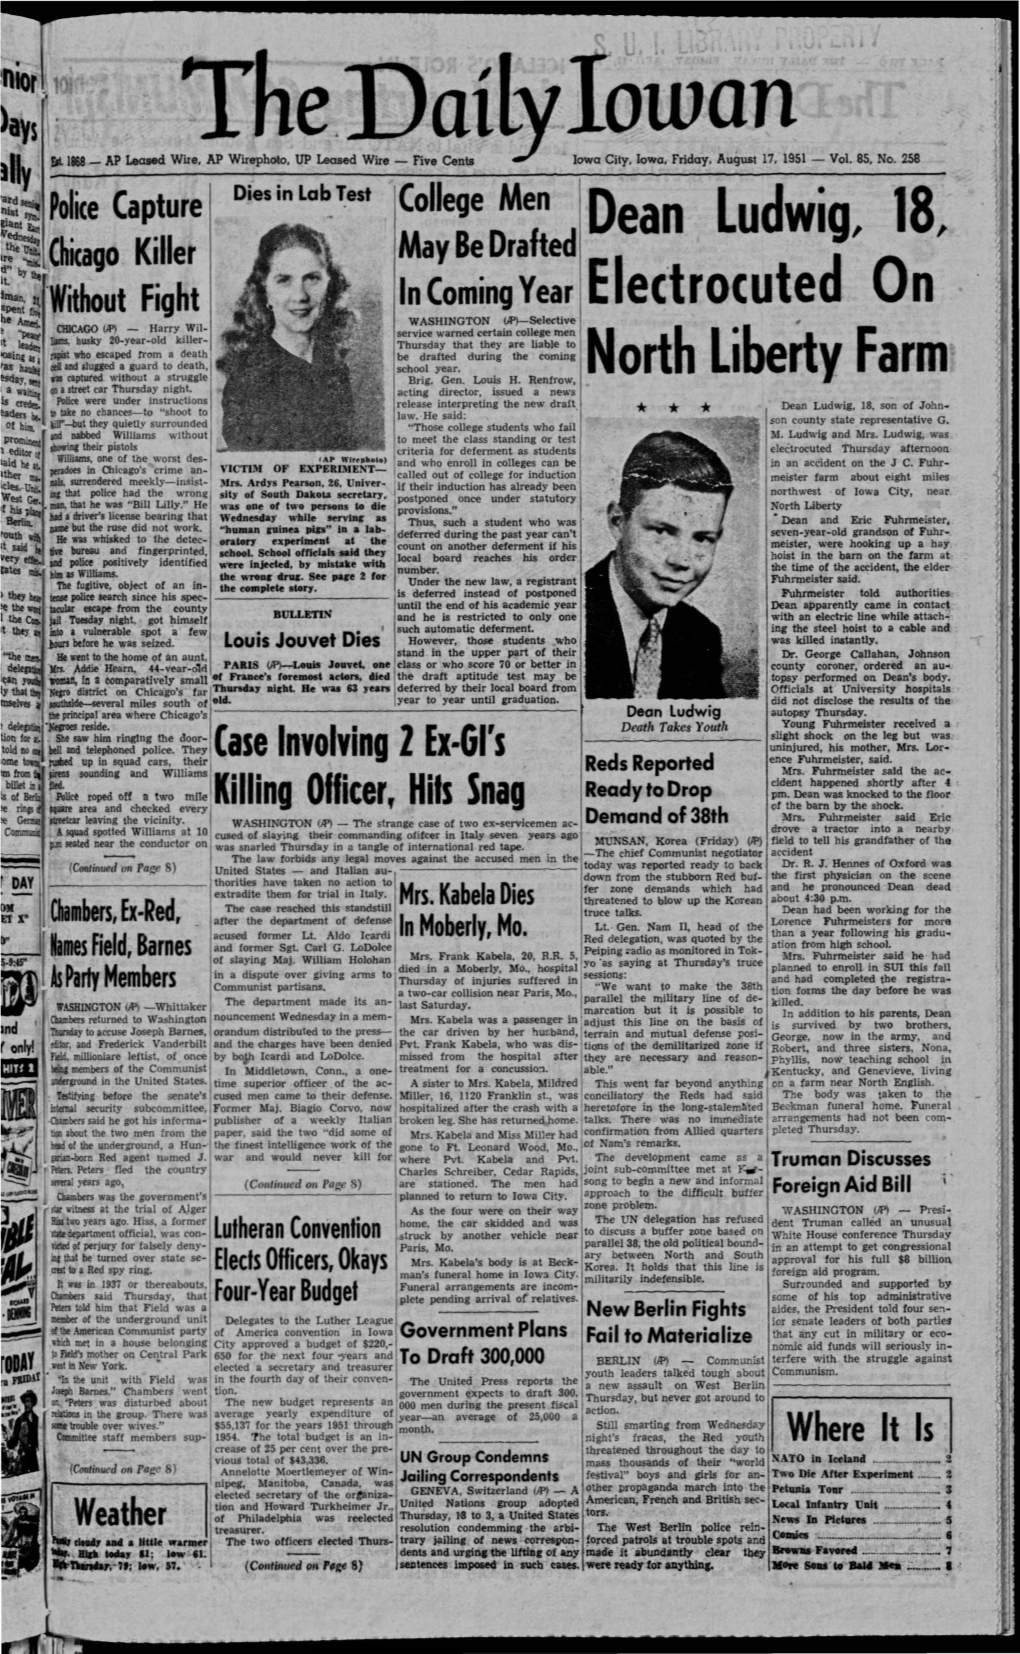 Daily Iowan (Iowa City, Iowa), 1951-08-17